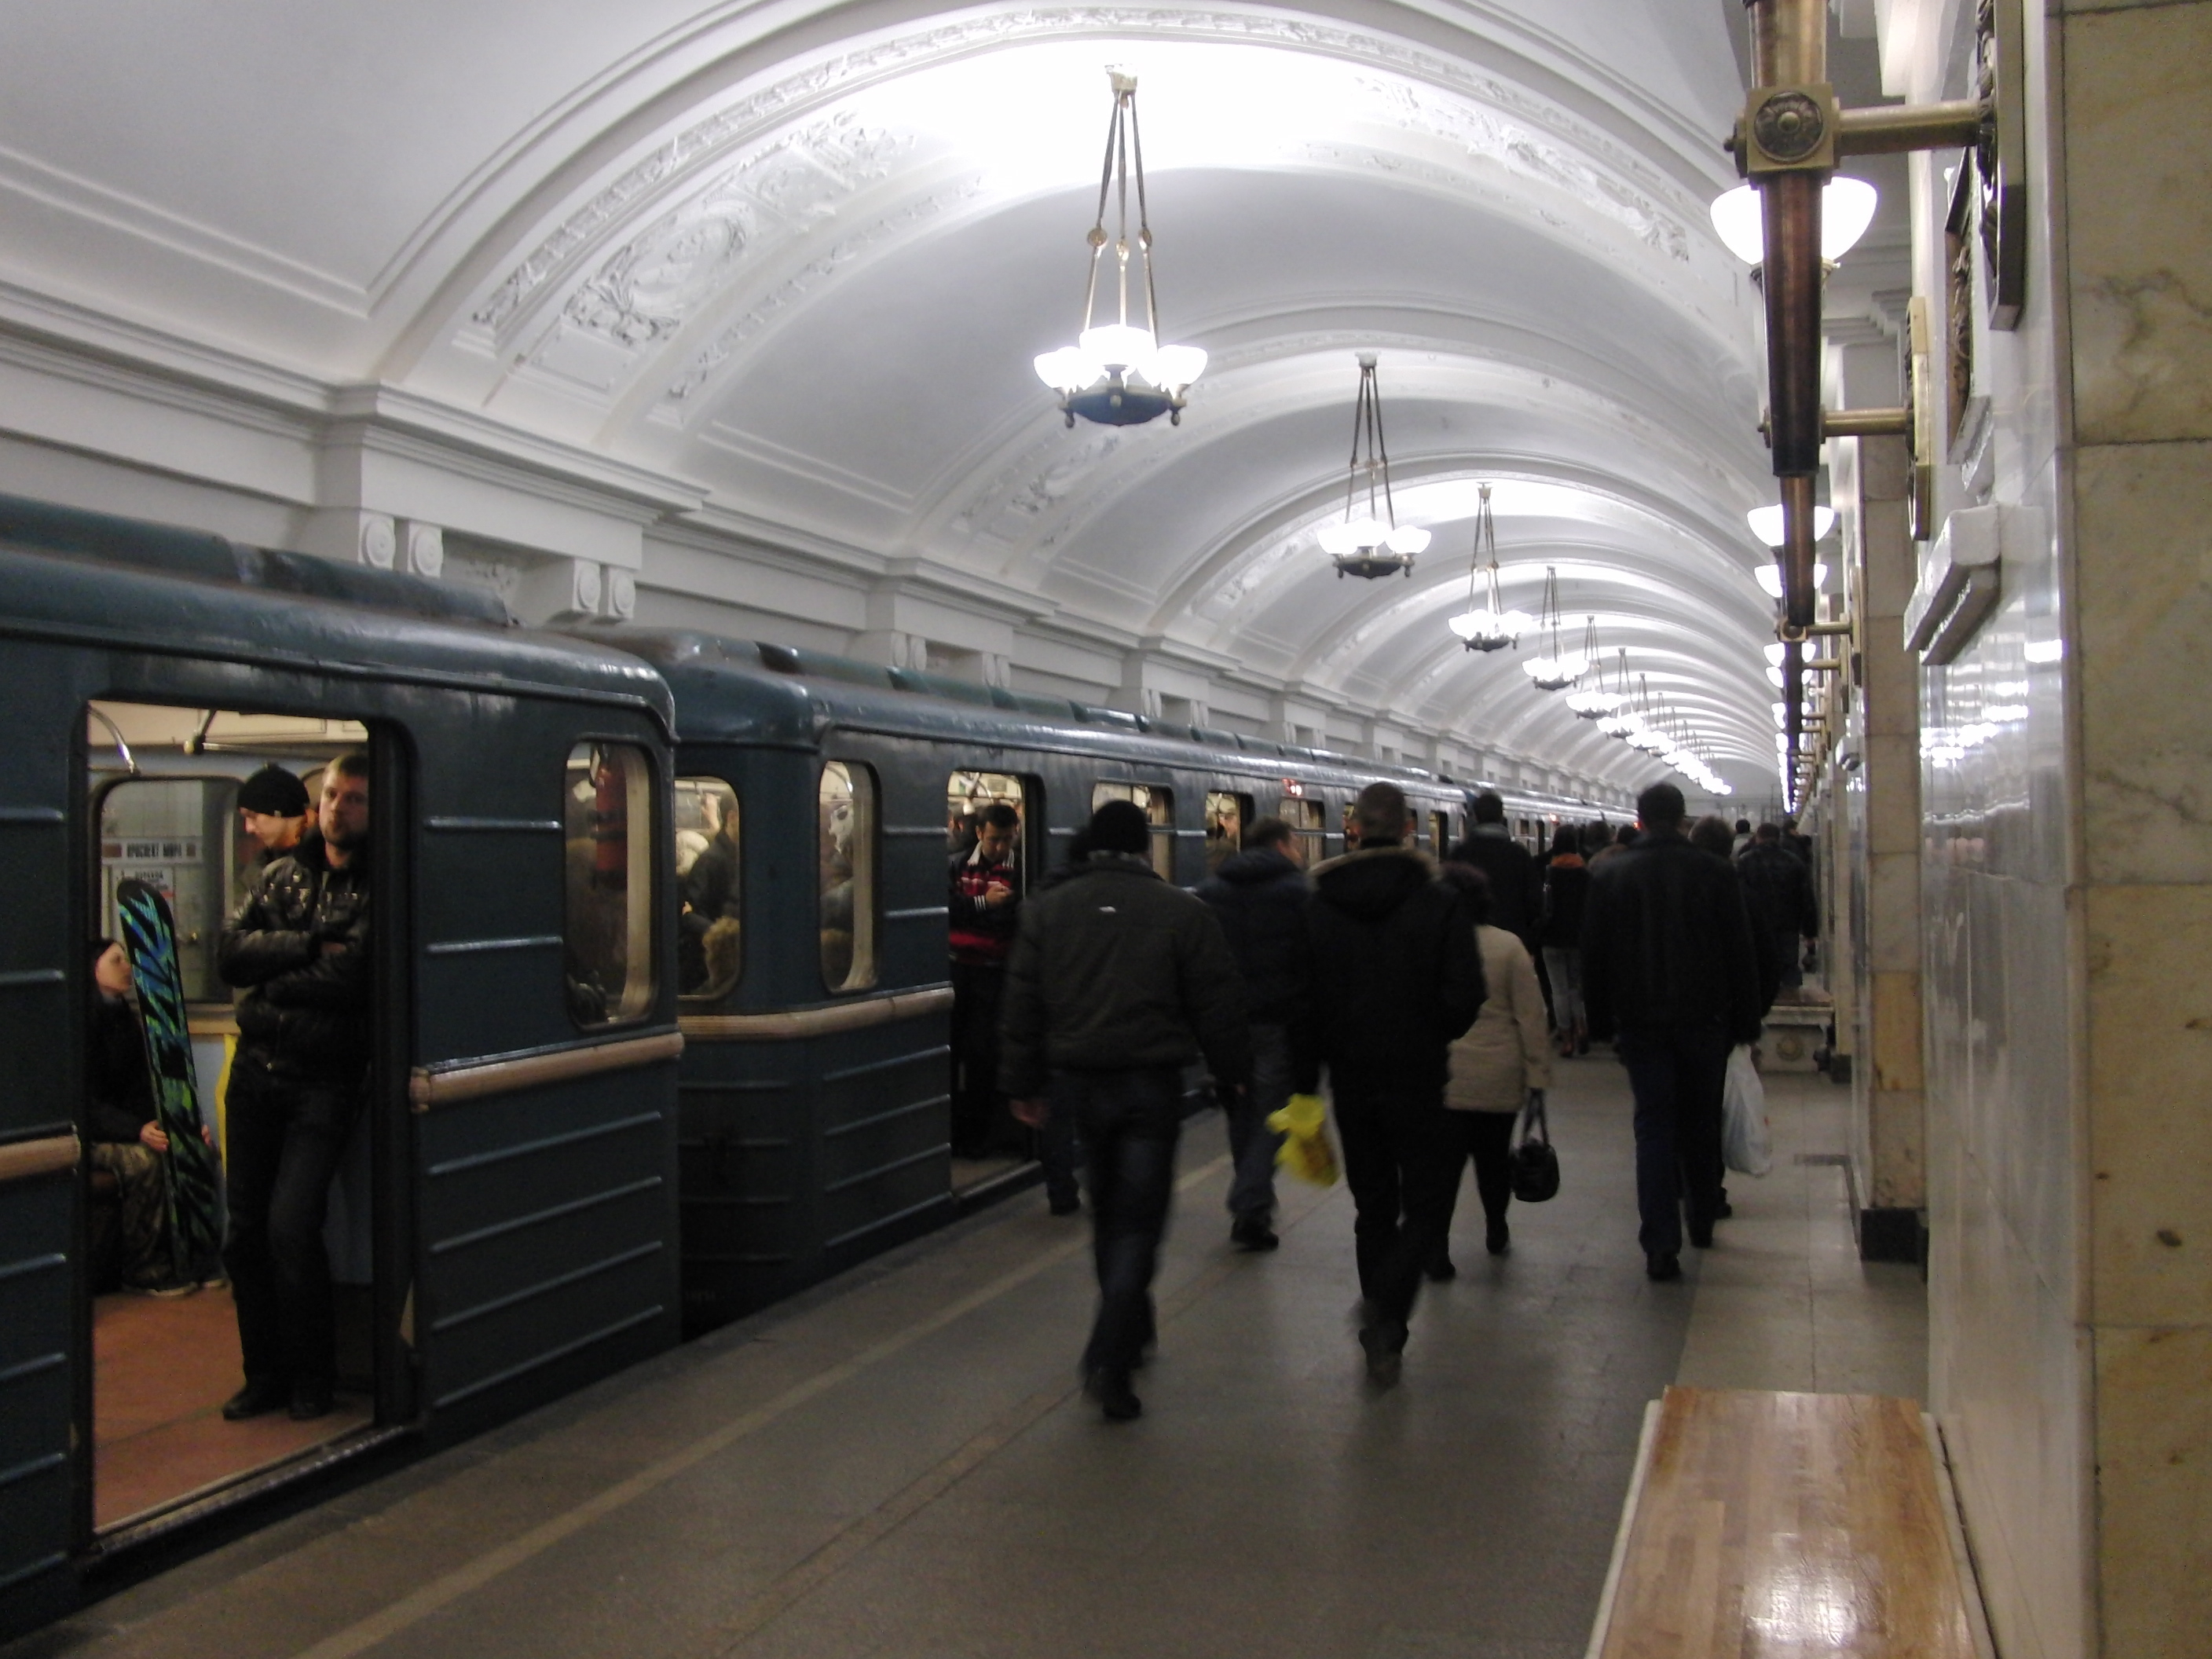 фото станции метро октябрьская